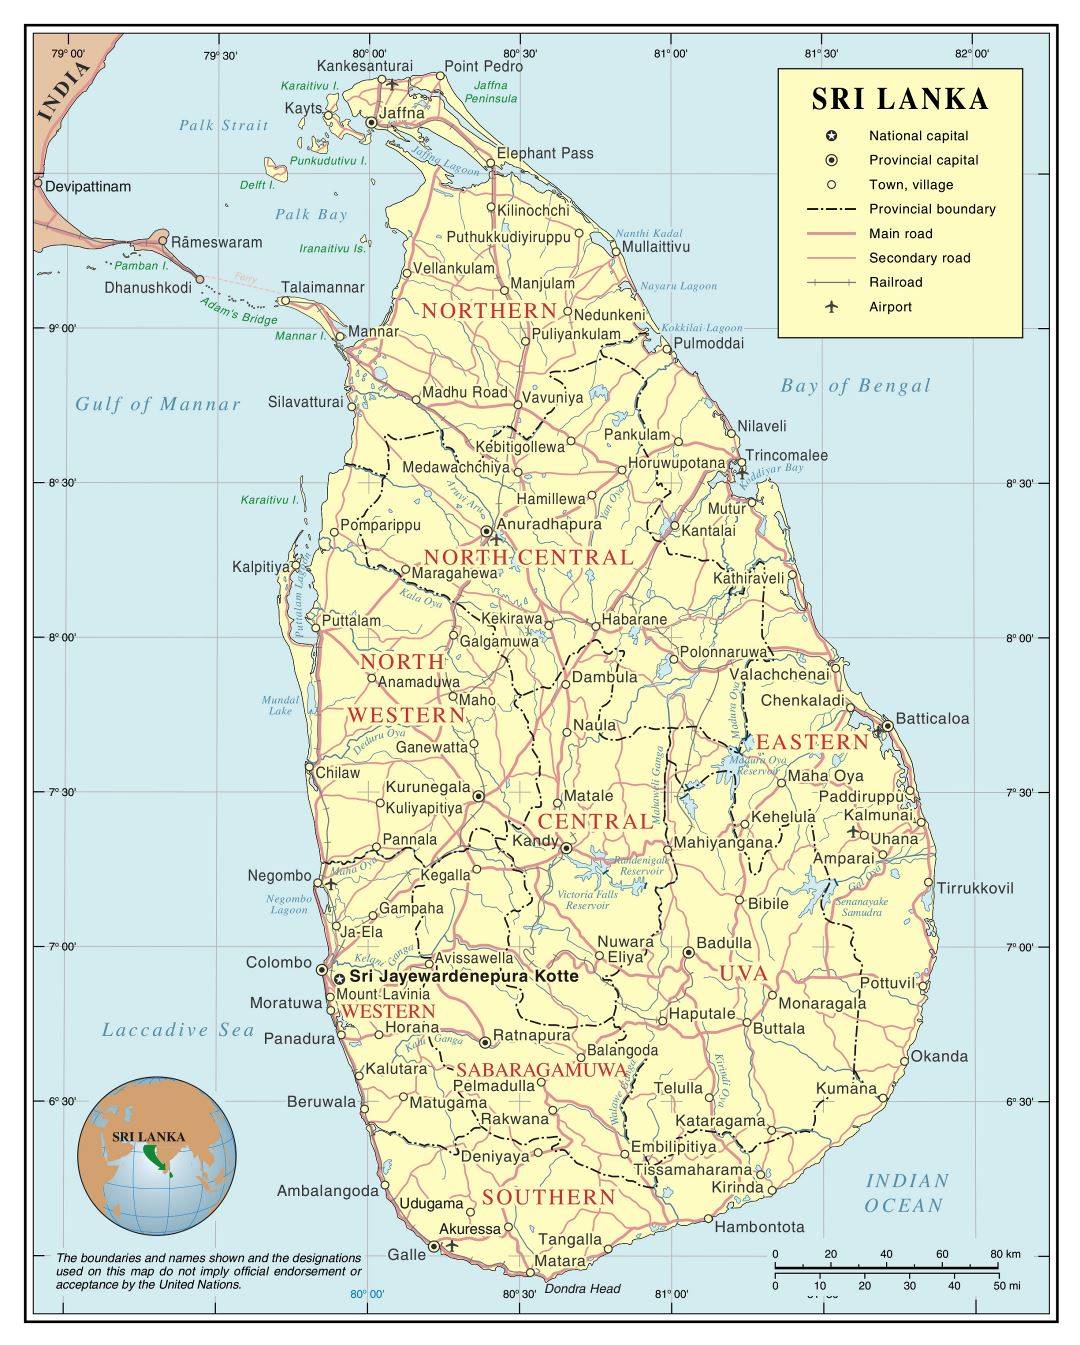 Grande detallado mapa político y administrativo de Sri Lanka con carreteras, ferrocarriles, ciudades y aeropuertos